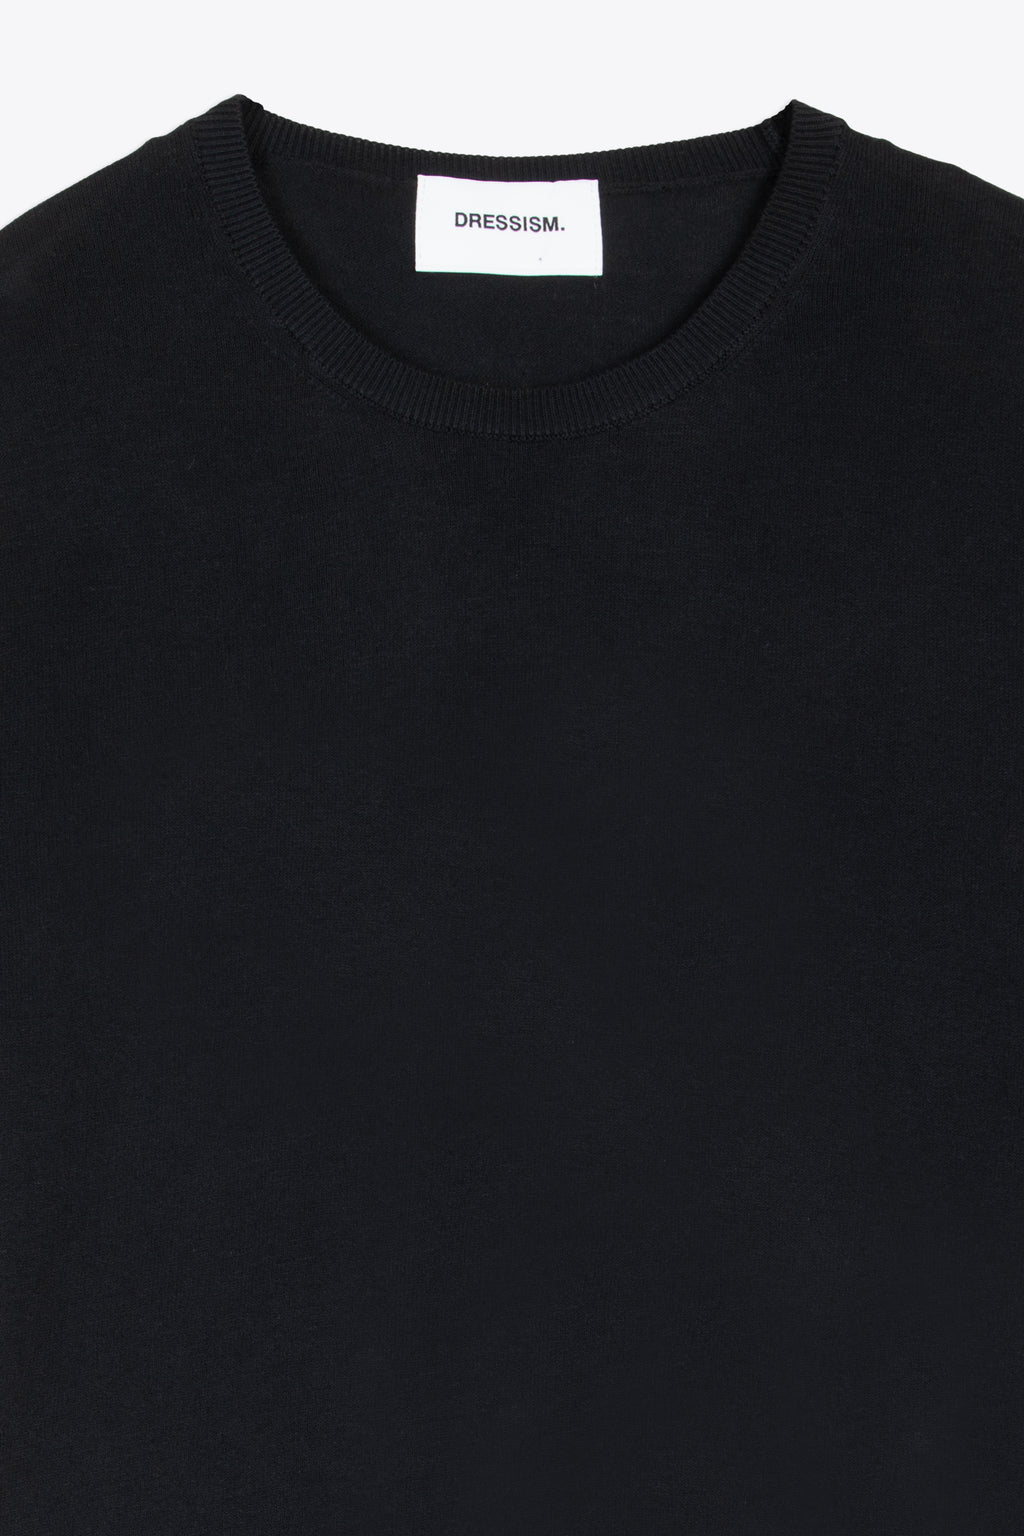 alt-image__Black-cotton-knit-t-shirt